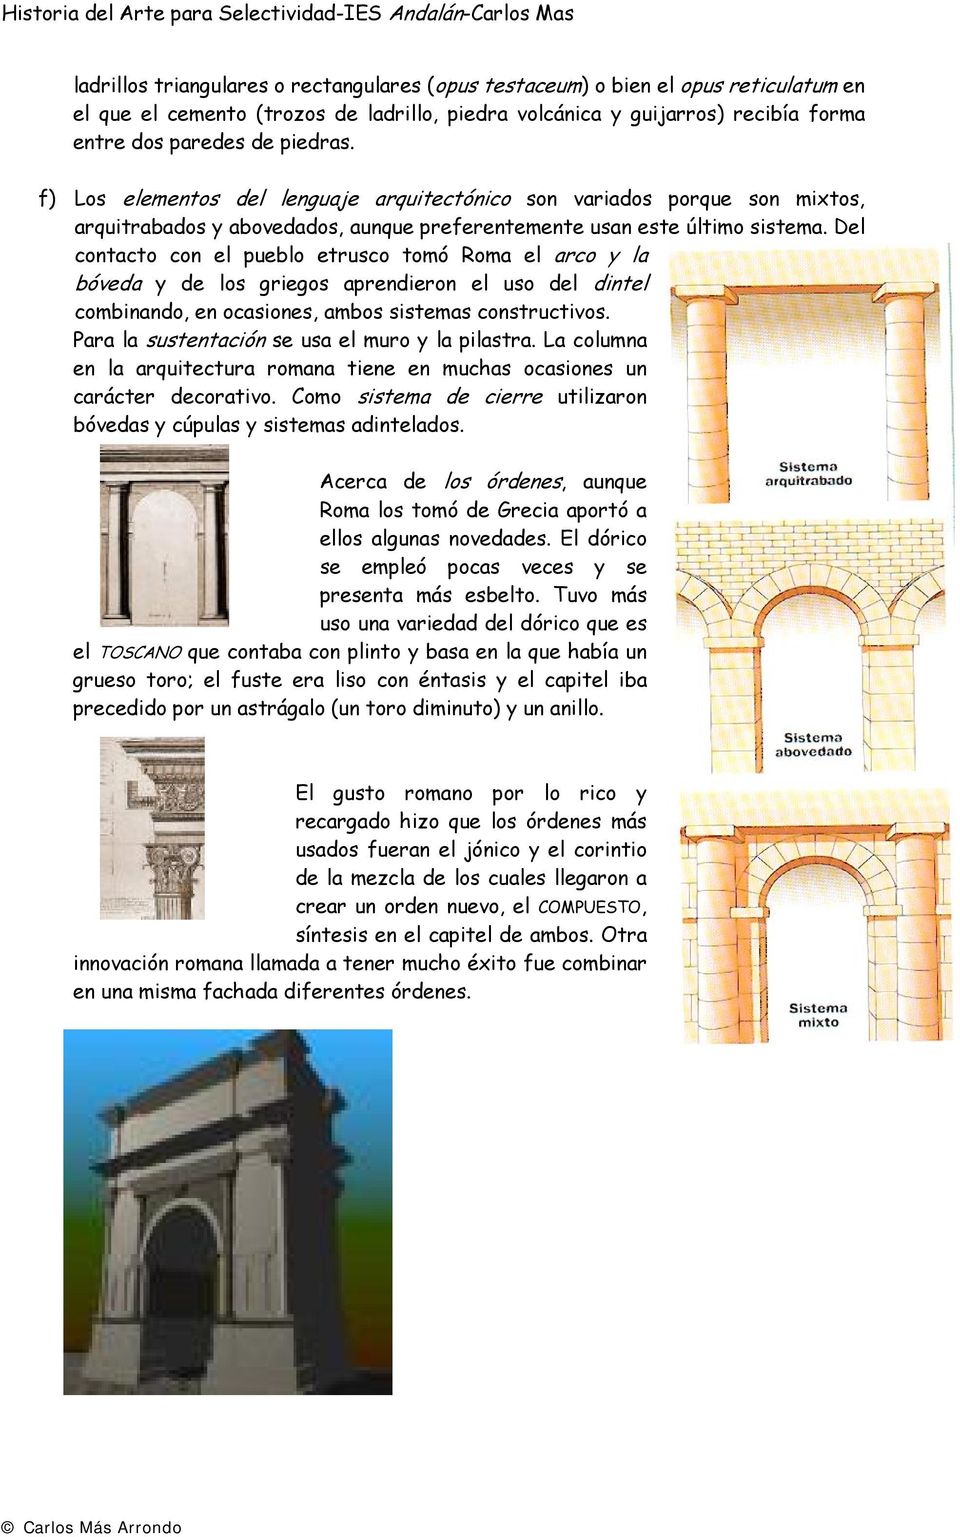 Del contacto con el pueblo etrusco tomó Roma el arco y la bóveda y de los griegos aprendieron el uso del dintel combinando, en ocasiones, ambos sistemas constructivos.